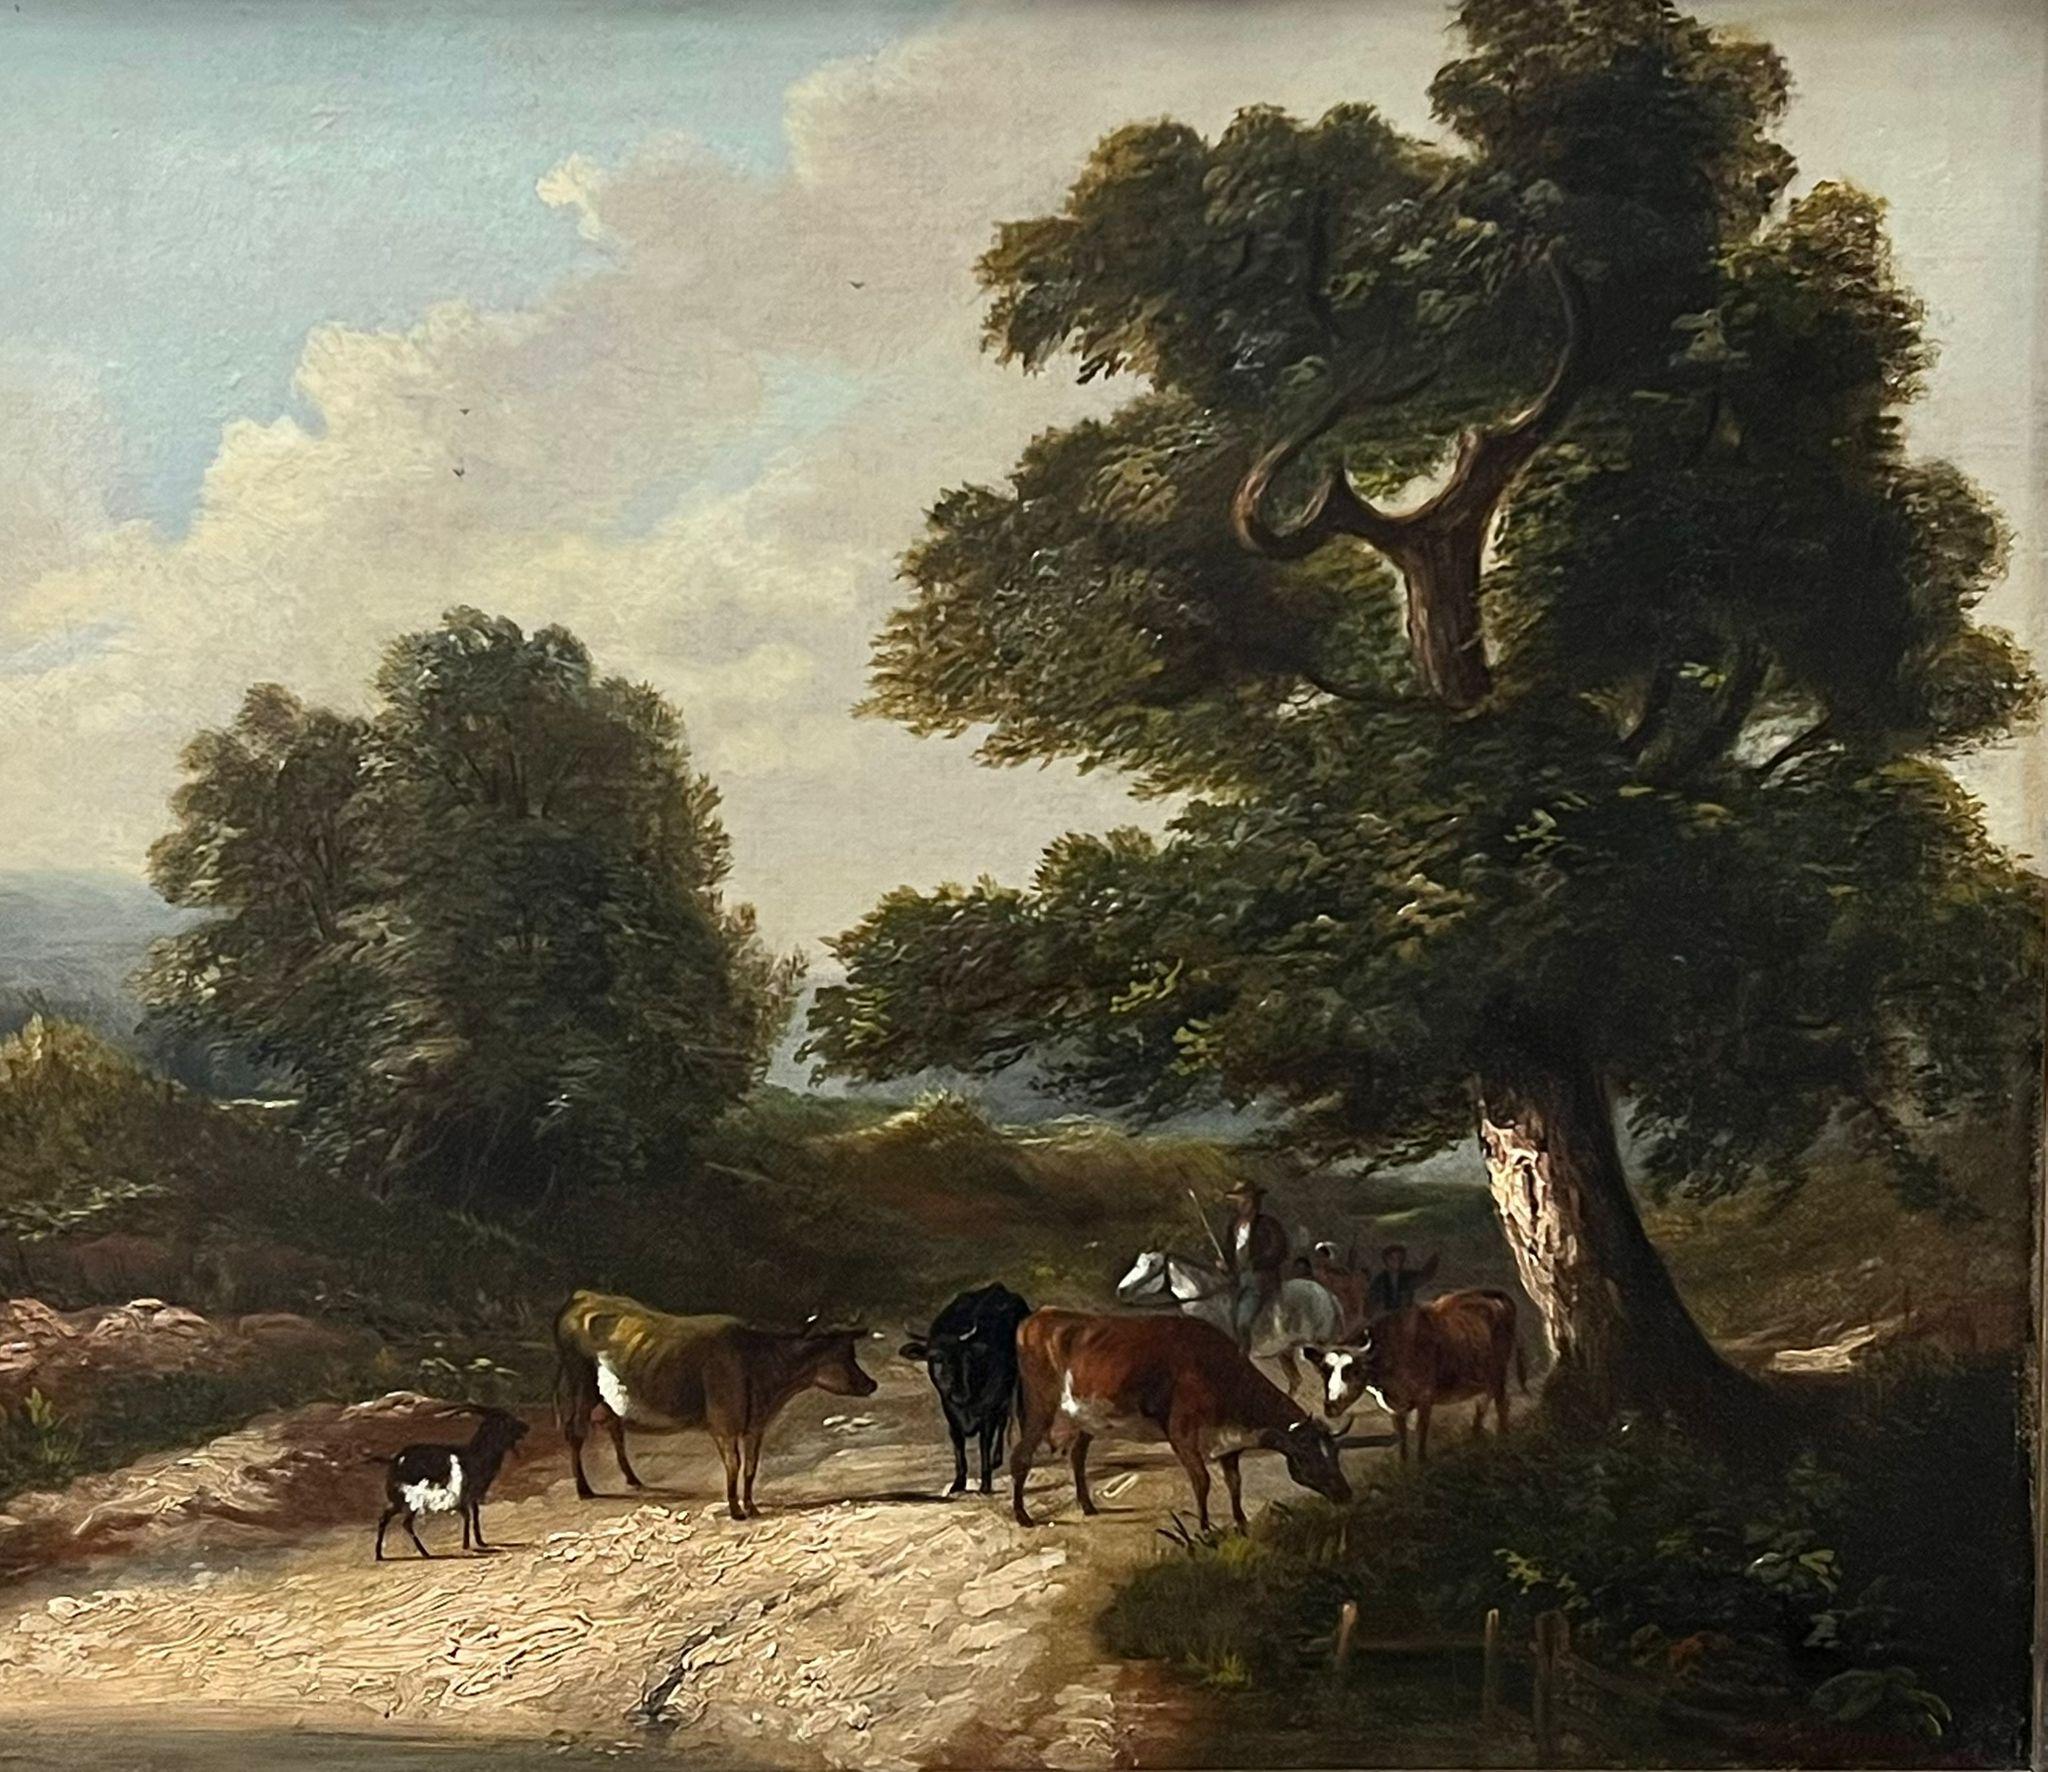 Charmante huile signée de l'époque victorienne, Fermier conduisant du bétail dans une ruelle rurale un jour de marché